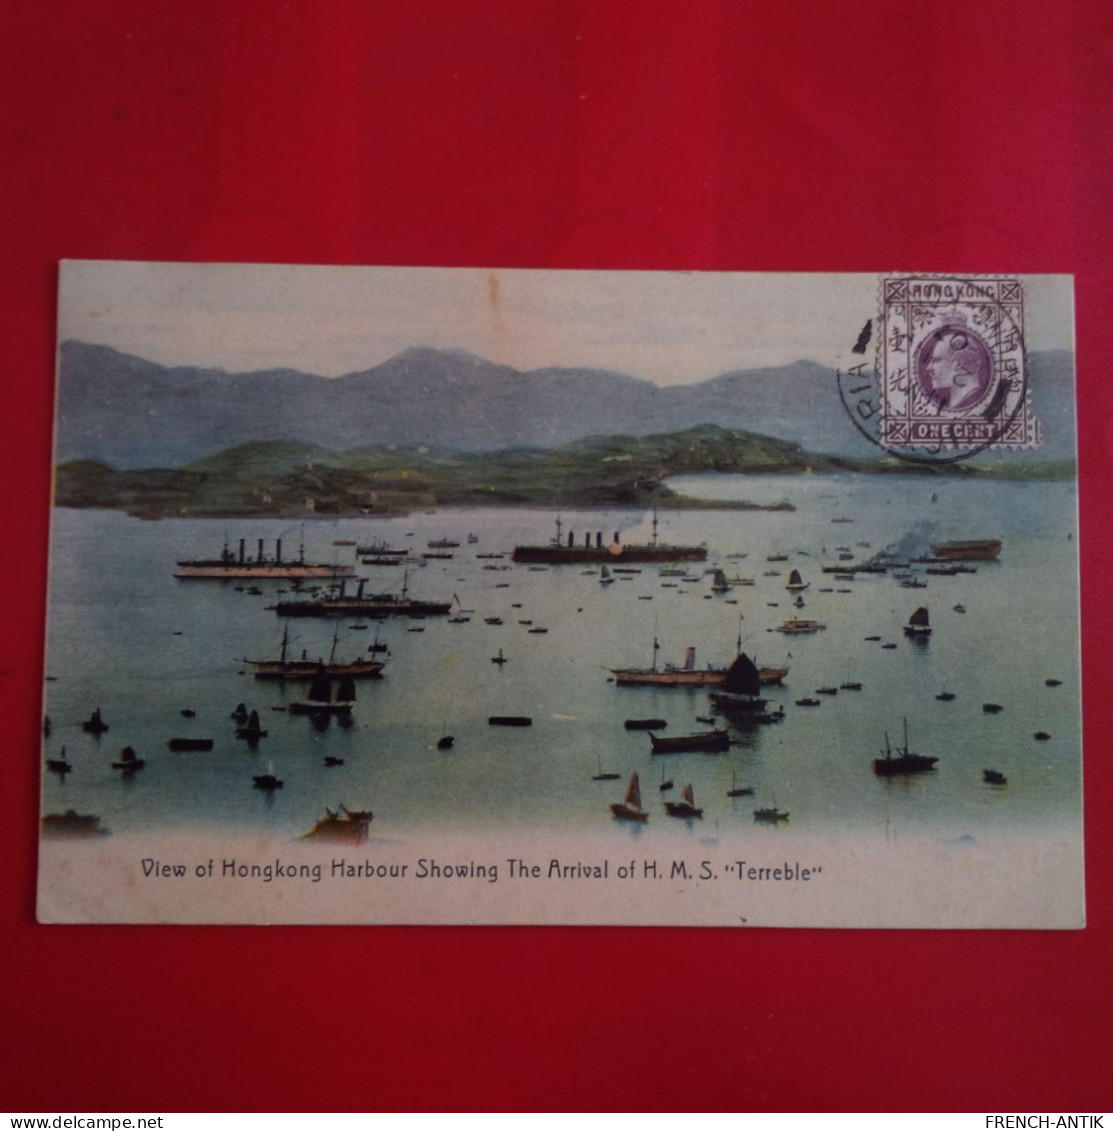 HONGKONG HARBOURG SHOWING THE ARRIVAL OF H.M.S.TERREBLE - China (Hongkong)